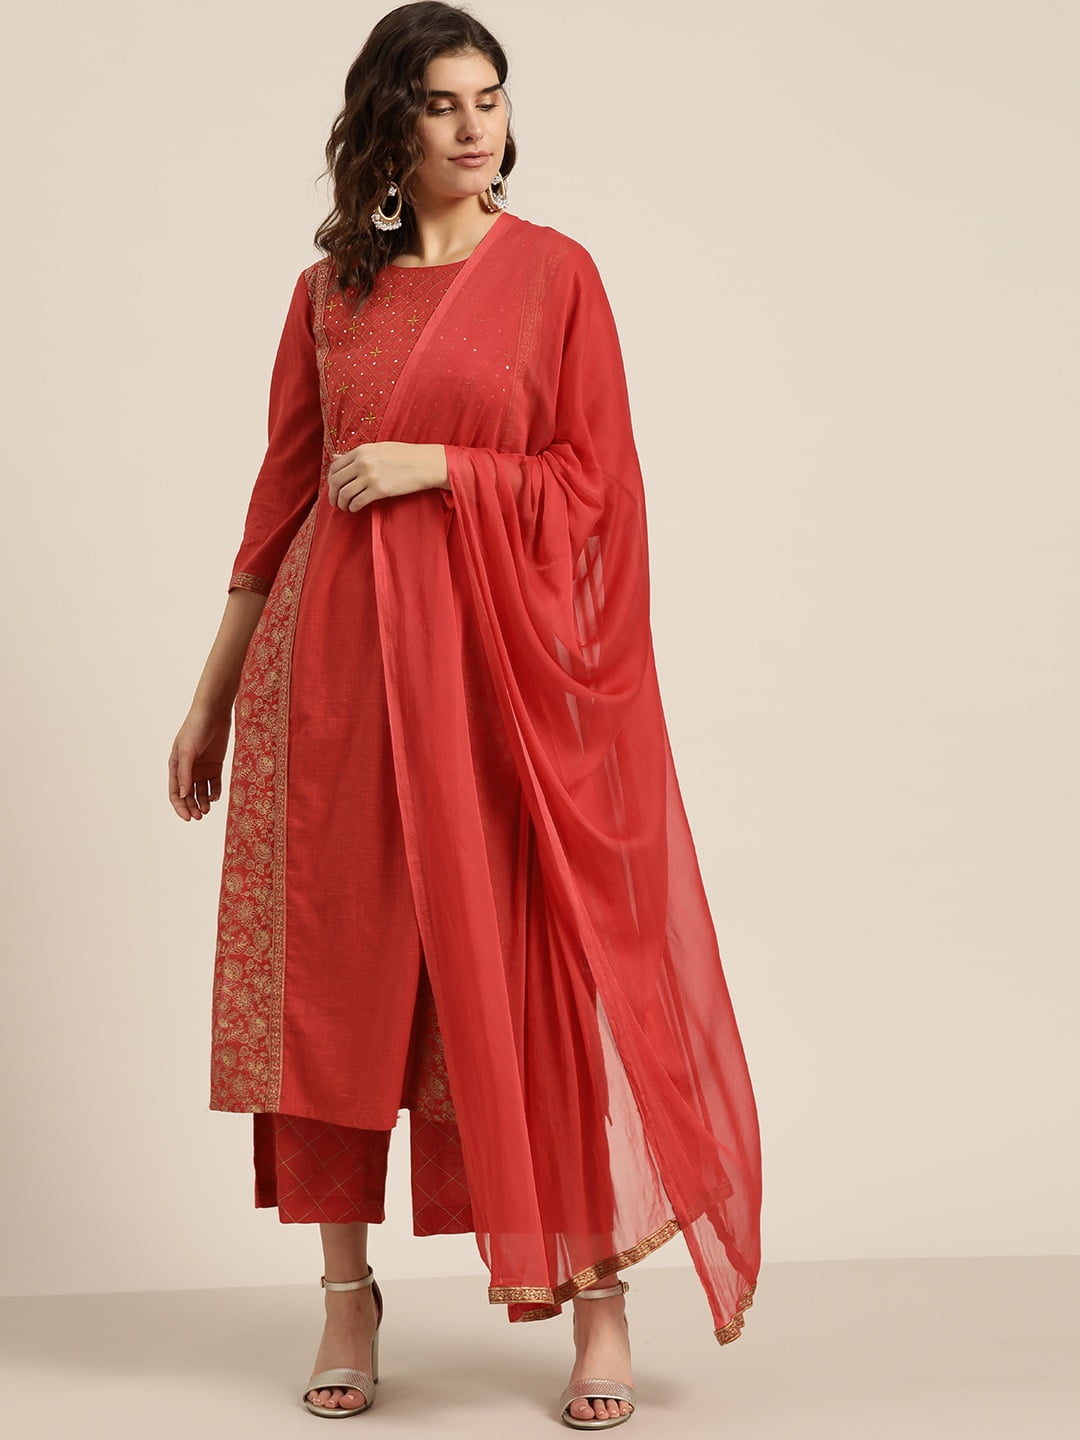 Mabish By Sonal Jain Night Suits - Buy Mabish By Sonal Jain Night Suits  online in India